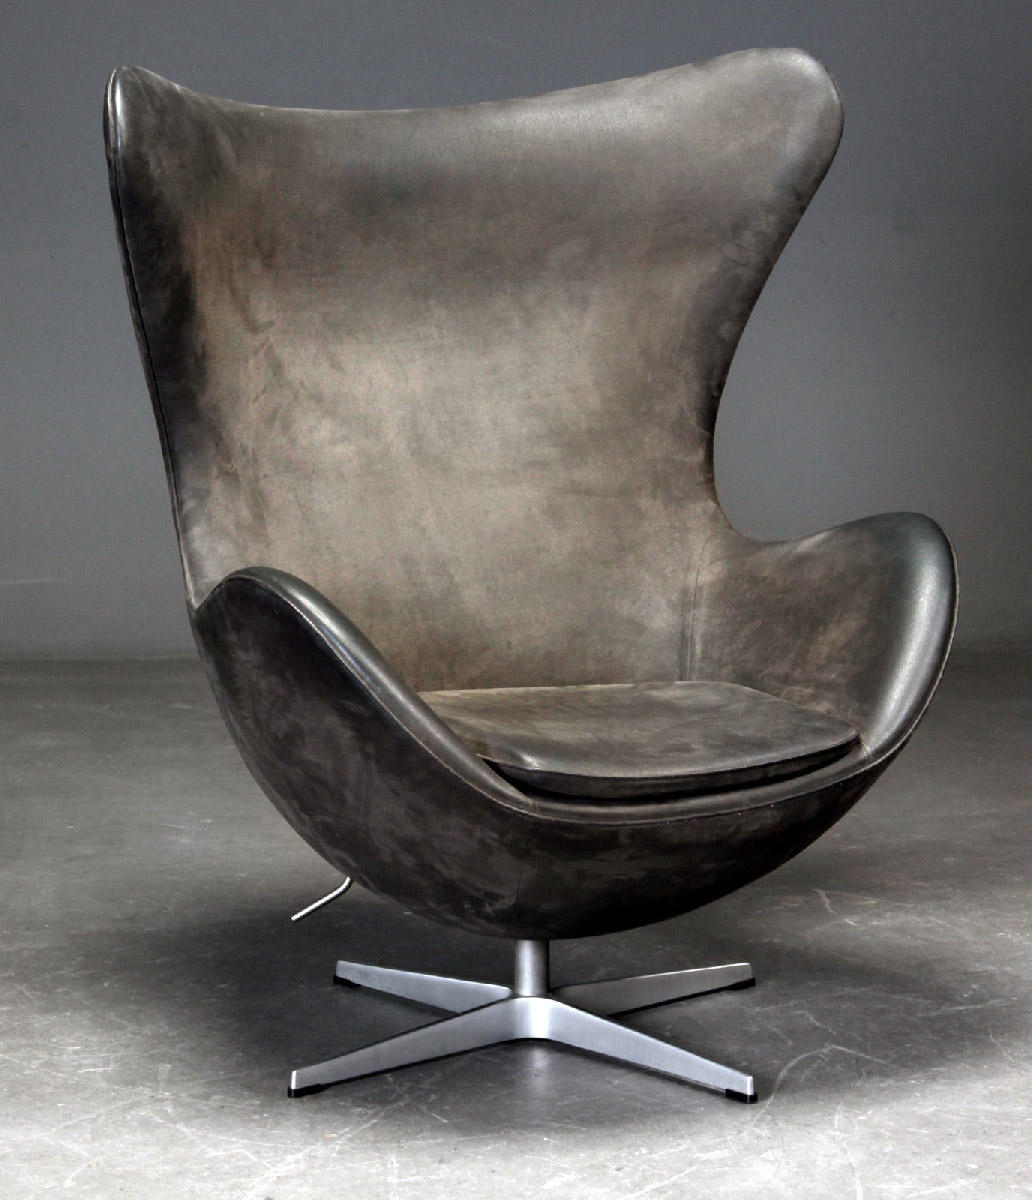 The Egg Chair By Arne Jacobsen For Fritz Hansen Nommad Design